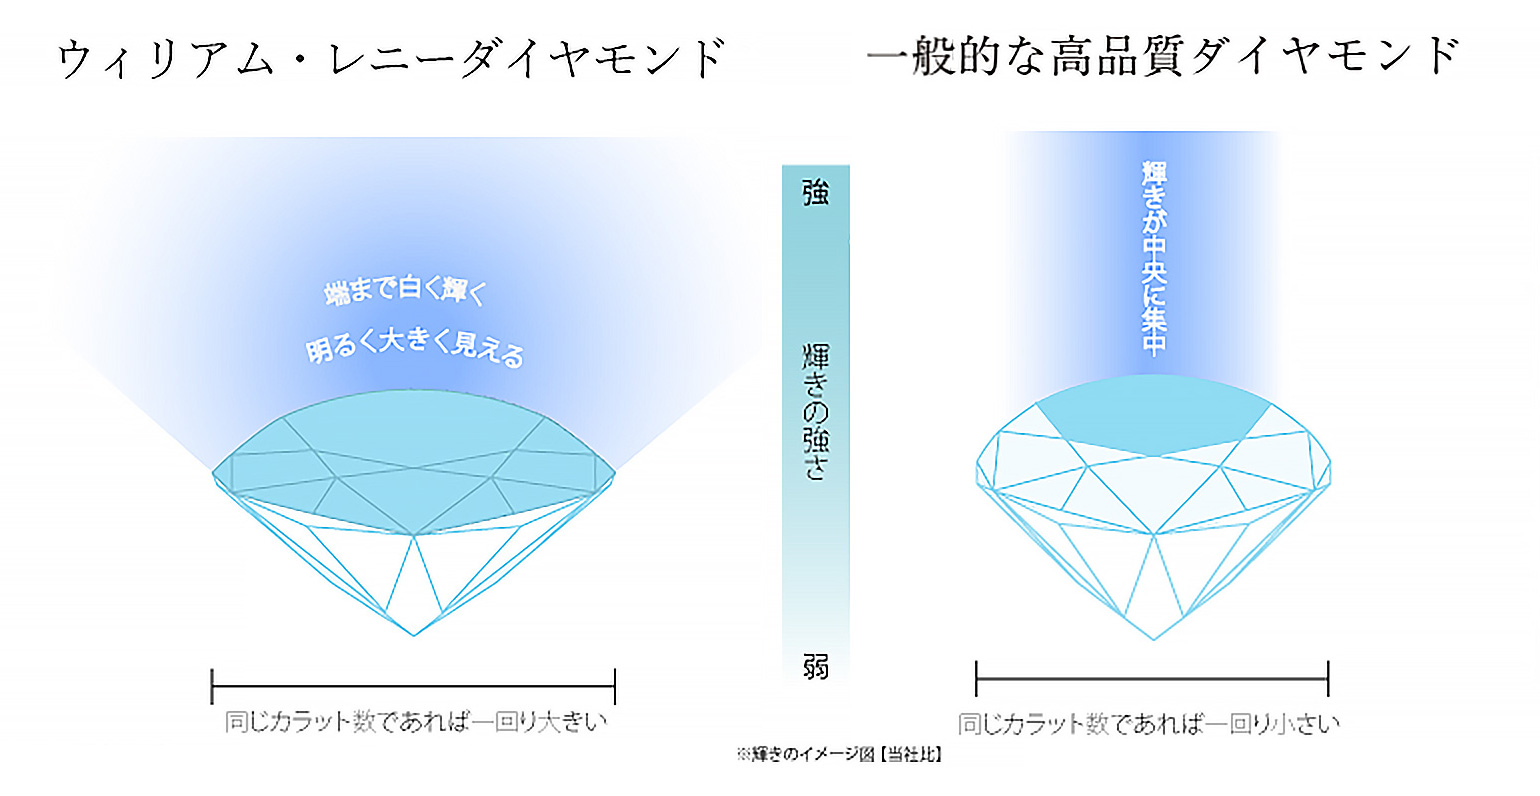 一般的な高品質ダイヤモンド→同じカラット数であれば一回り小さい / ウィリアム・レニーダイヤモンド→同じカラット数であれば一回り大きい ※輝きのイメージ図（当社比）